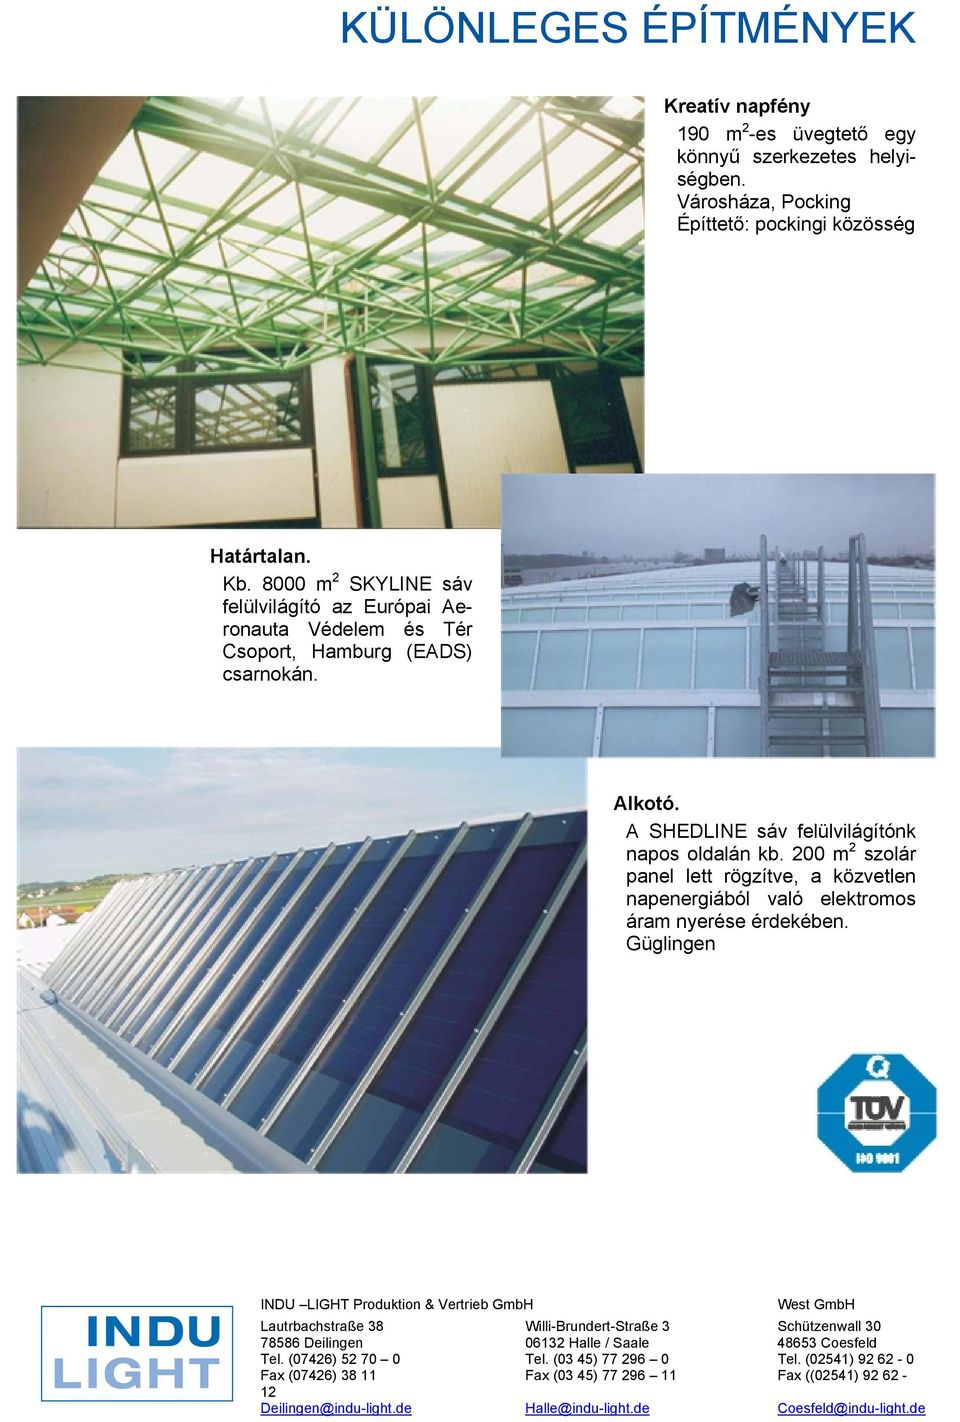 200 m 2 szolár panel lett rögzítve, a közvetlen napenergiából való elektromos áram nyerése érdekében.